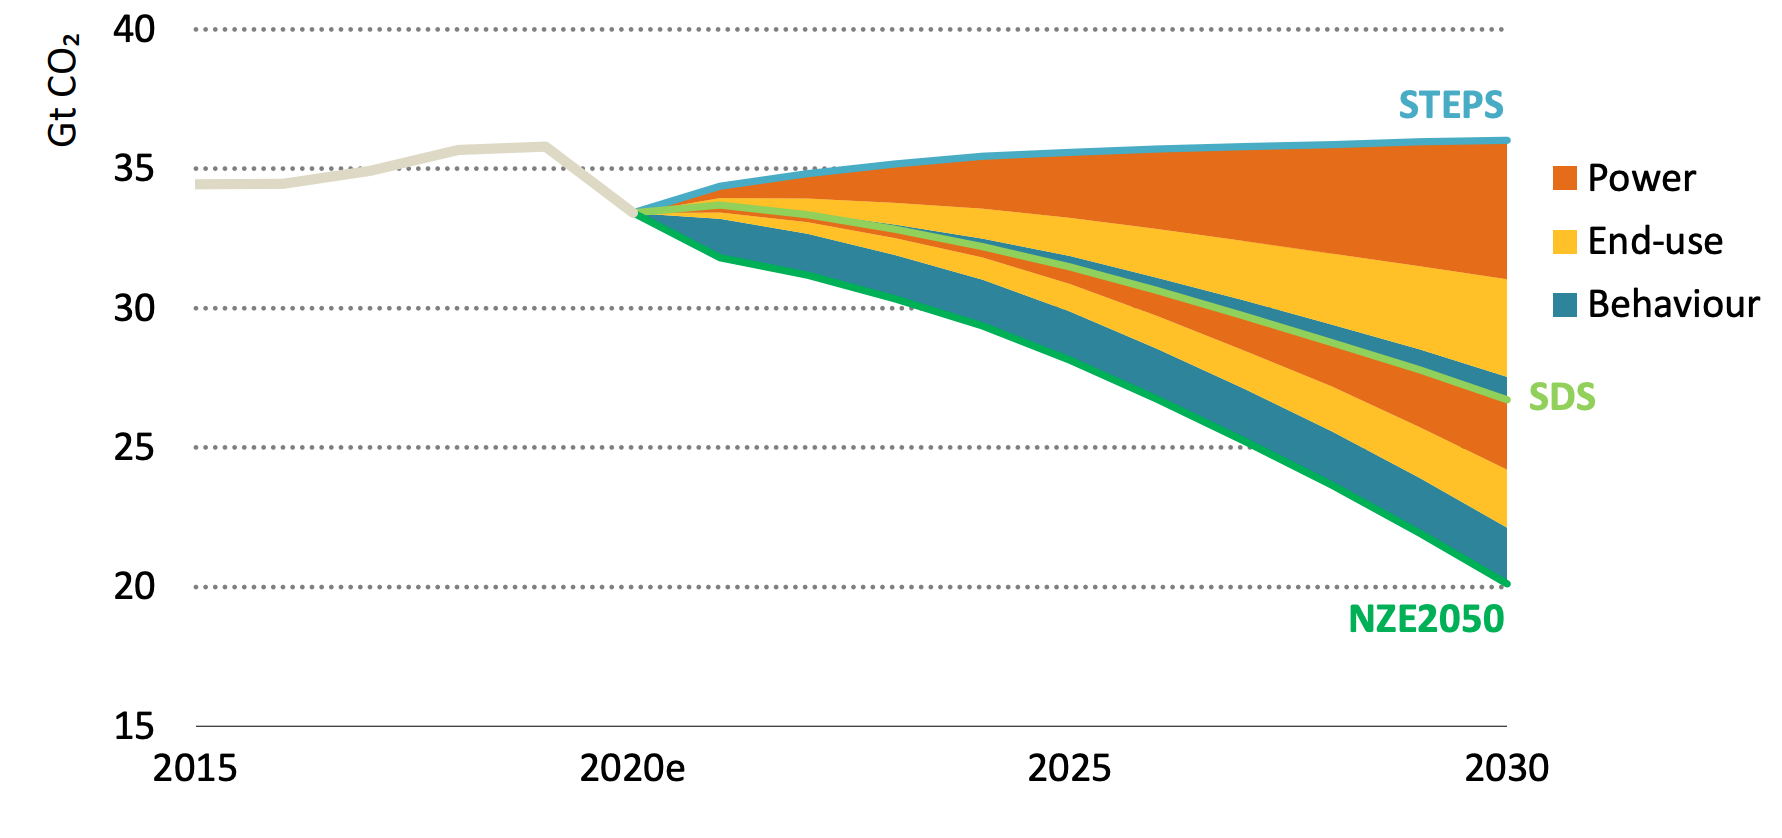 全球能源和工业公关的二氧化碳排放量ocesses, 2015-2030, billion tonnes of CO2 (GtCO2), under the STEPS, SDS and NZE2050. Coloured wedges show contributions to the additional savings needed for the SDS and NZE2050.